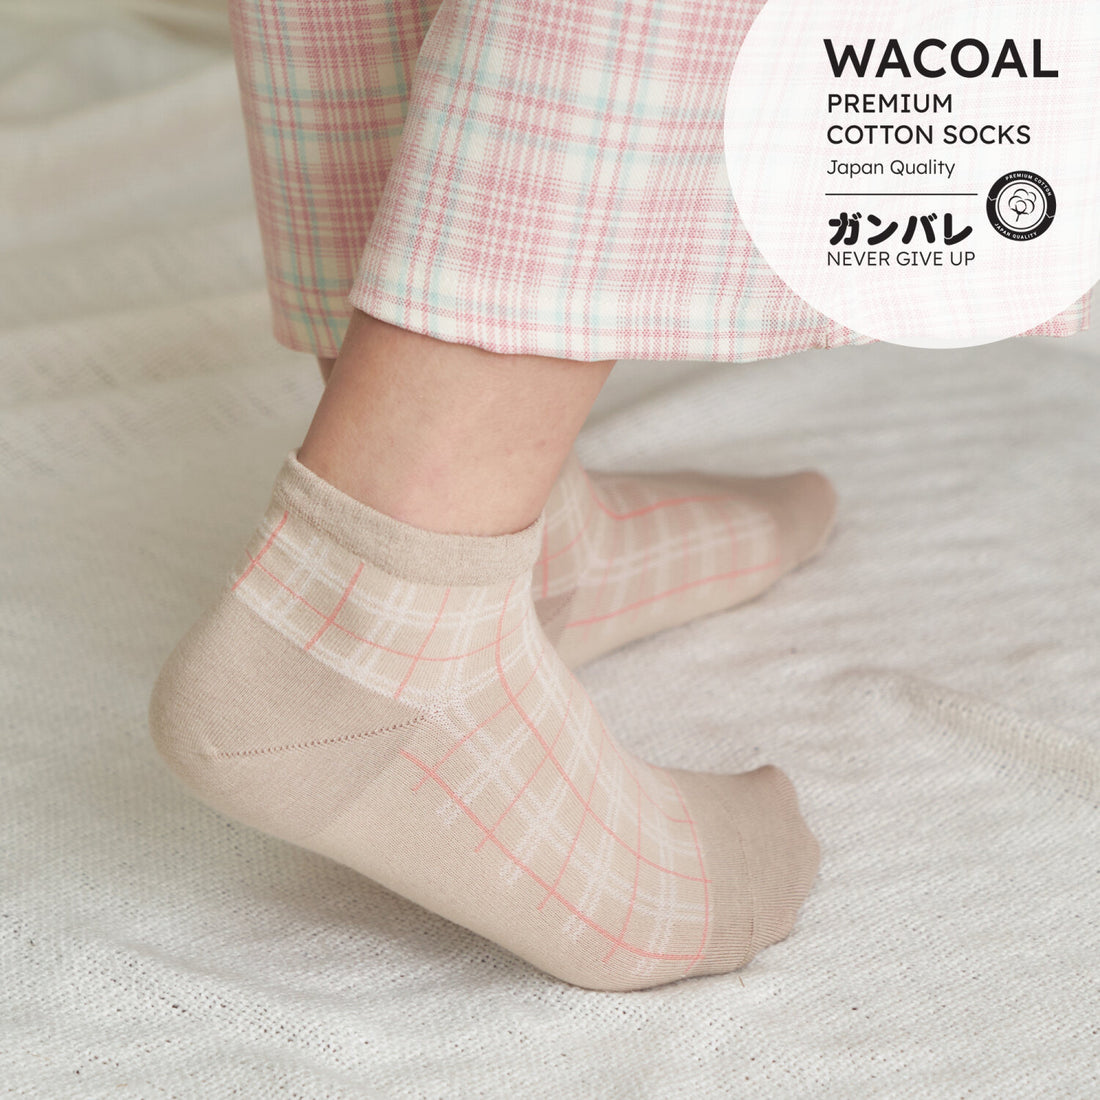 ถุงเท้าข้อสั้น Premium Cotton Socks Selected by Wacoal รุ่น WW110300 สีเนื้อ (NN)